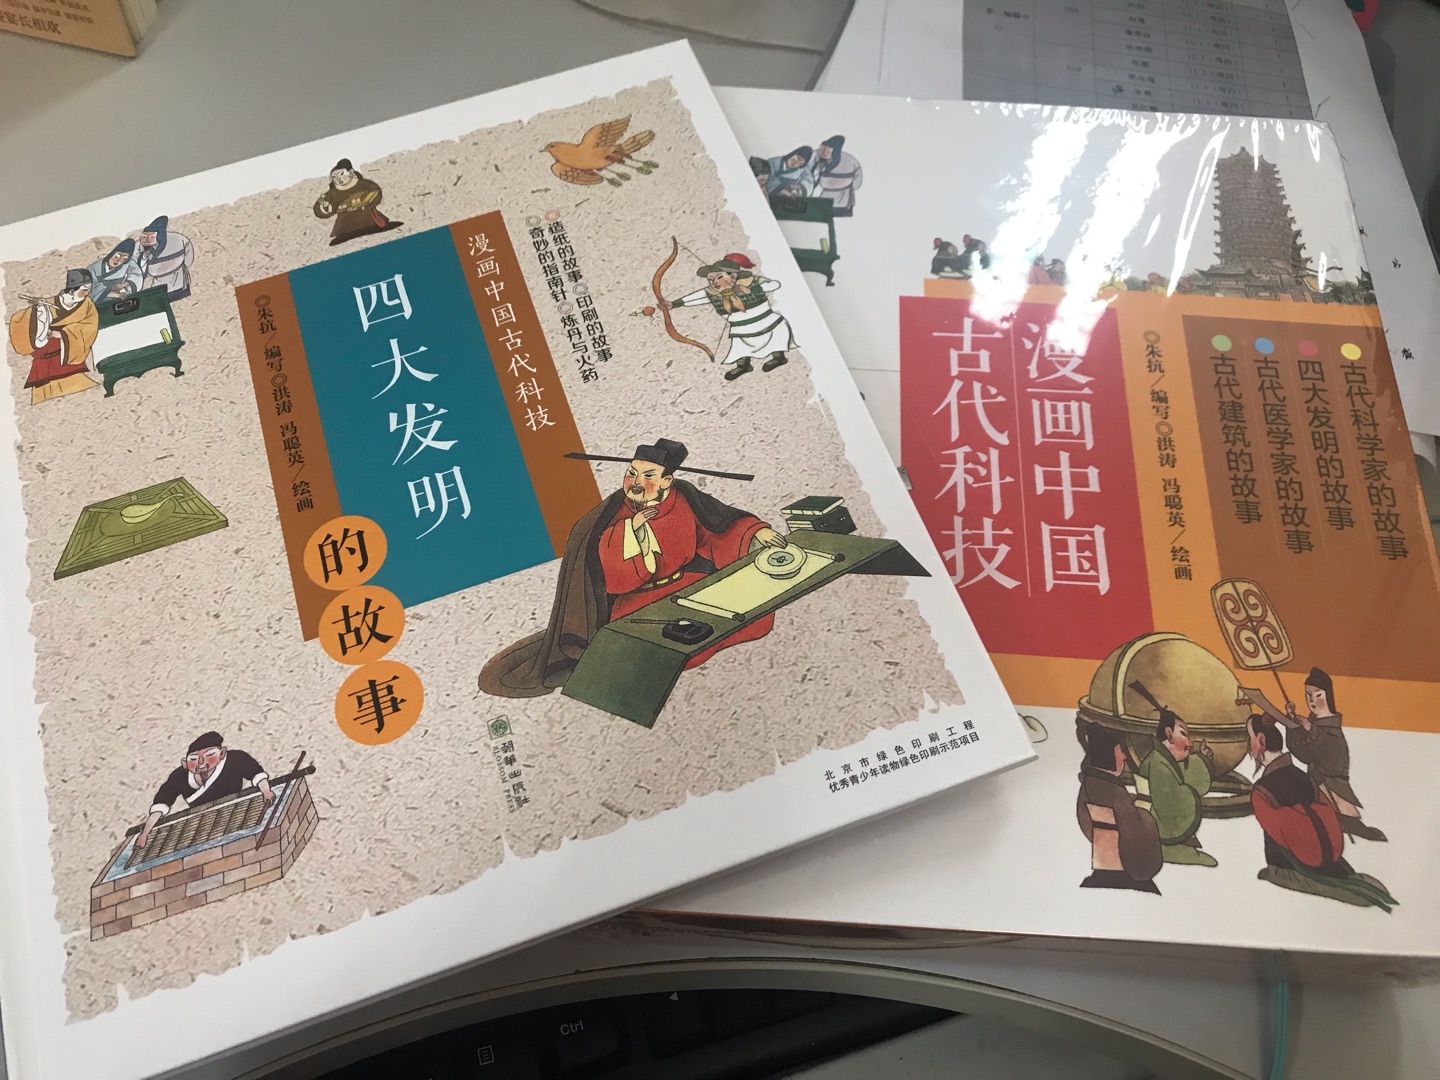 非常有特点的一套书 拿到手里沉甸甸的 质量很好 能够用漫画的方式让孩子了解中国的传统文化 女儿很喜欢。物流也很快 上午下单 下午就到了